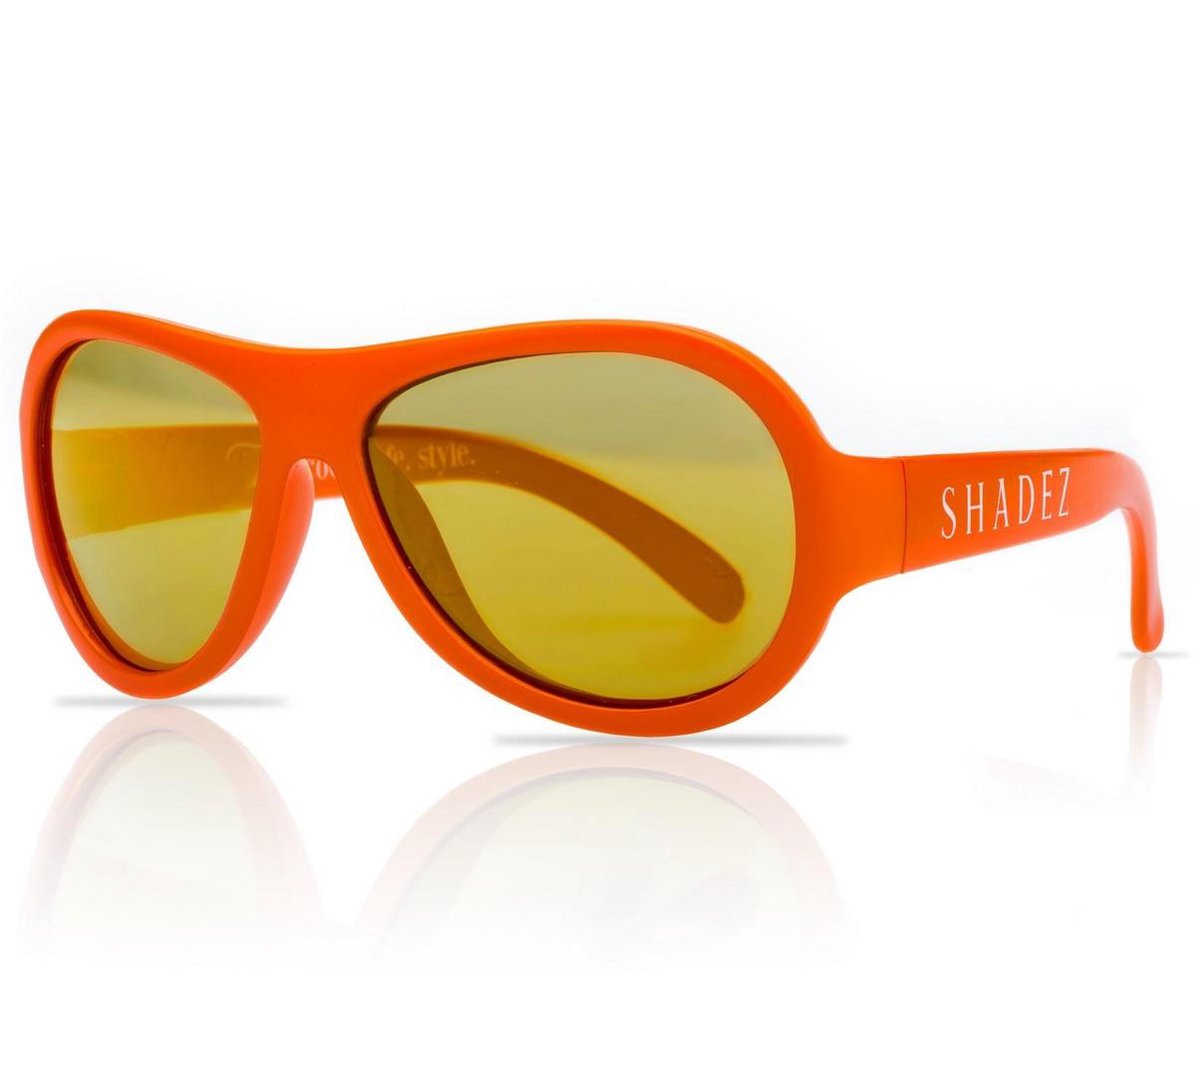 SHADEZ - Onbreekbare kinder zonnebril - UV 400 zonnebril kind - Oranje met Goudkleurige spiegelglazen - Maat 0-3 jaar